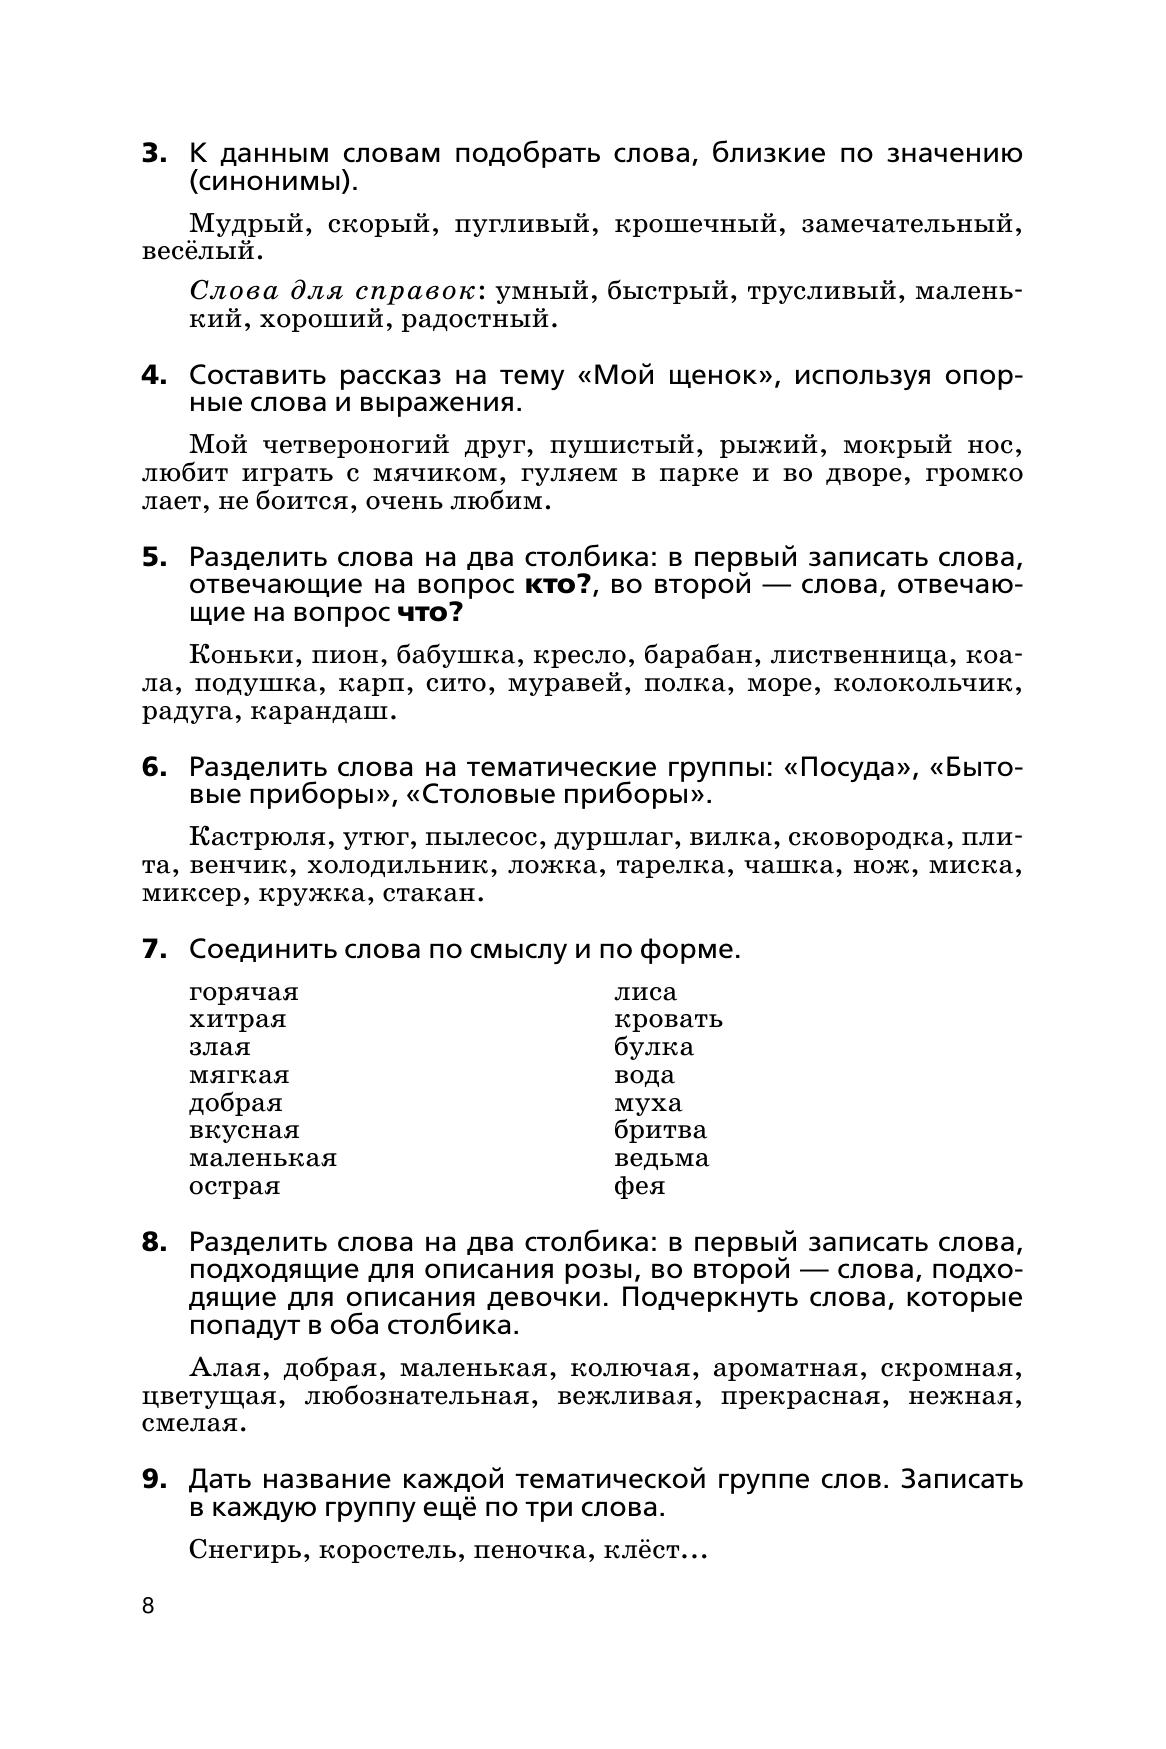 Русский язык. Сборник диктантов и творческих работ. 1-2 классы 11